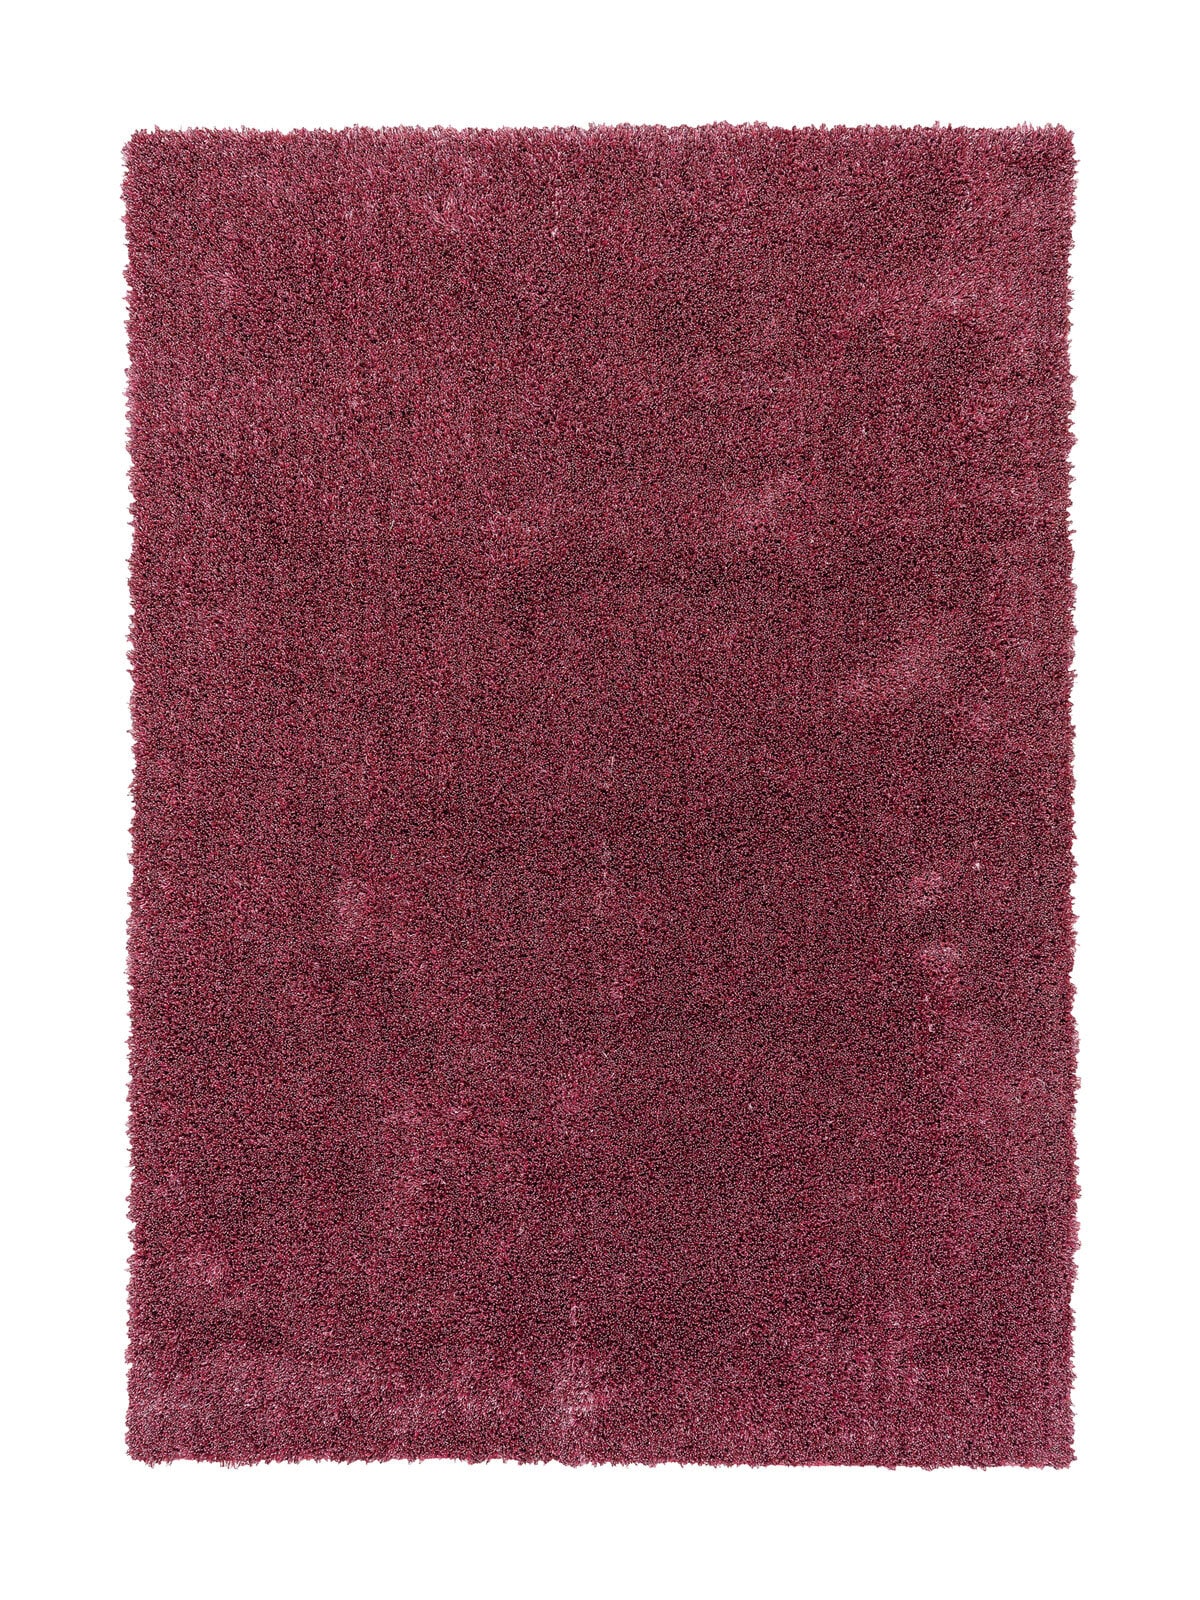 SCHÖNER WOHNEN-Kollektion Hochflorteppich NEW FEELING 200 x 300 cm rosa 